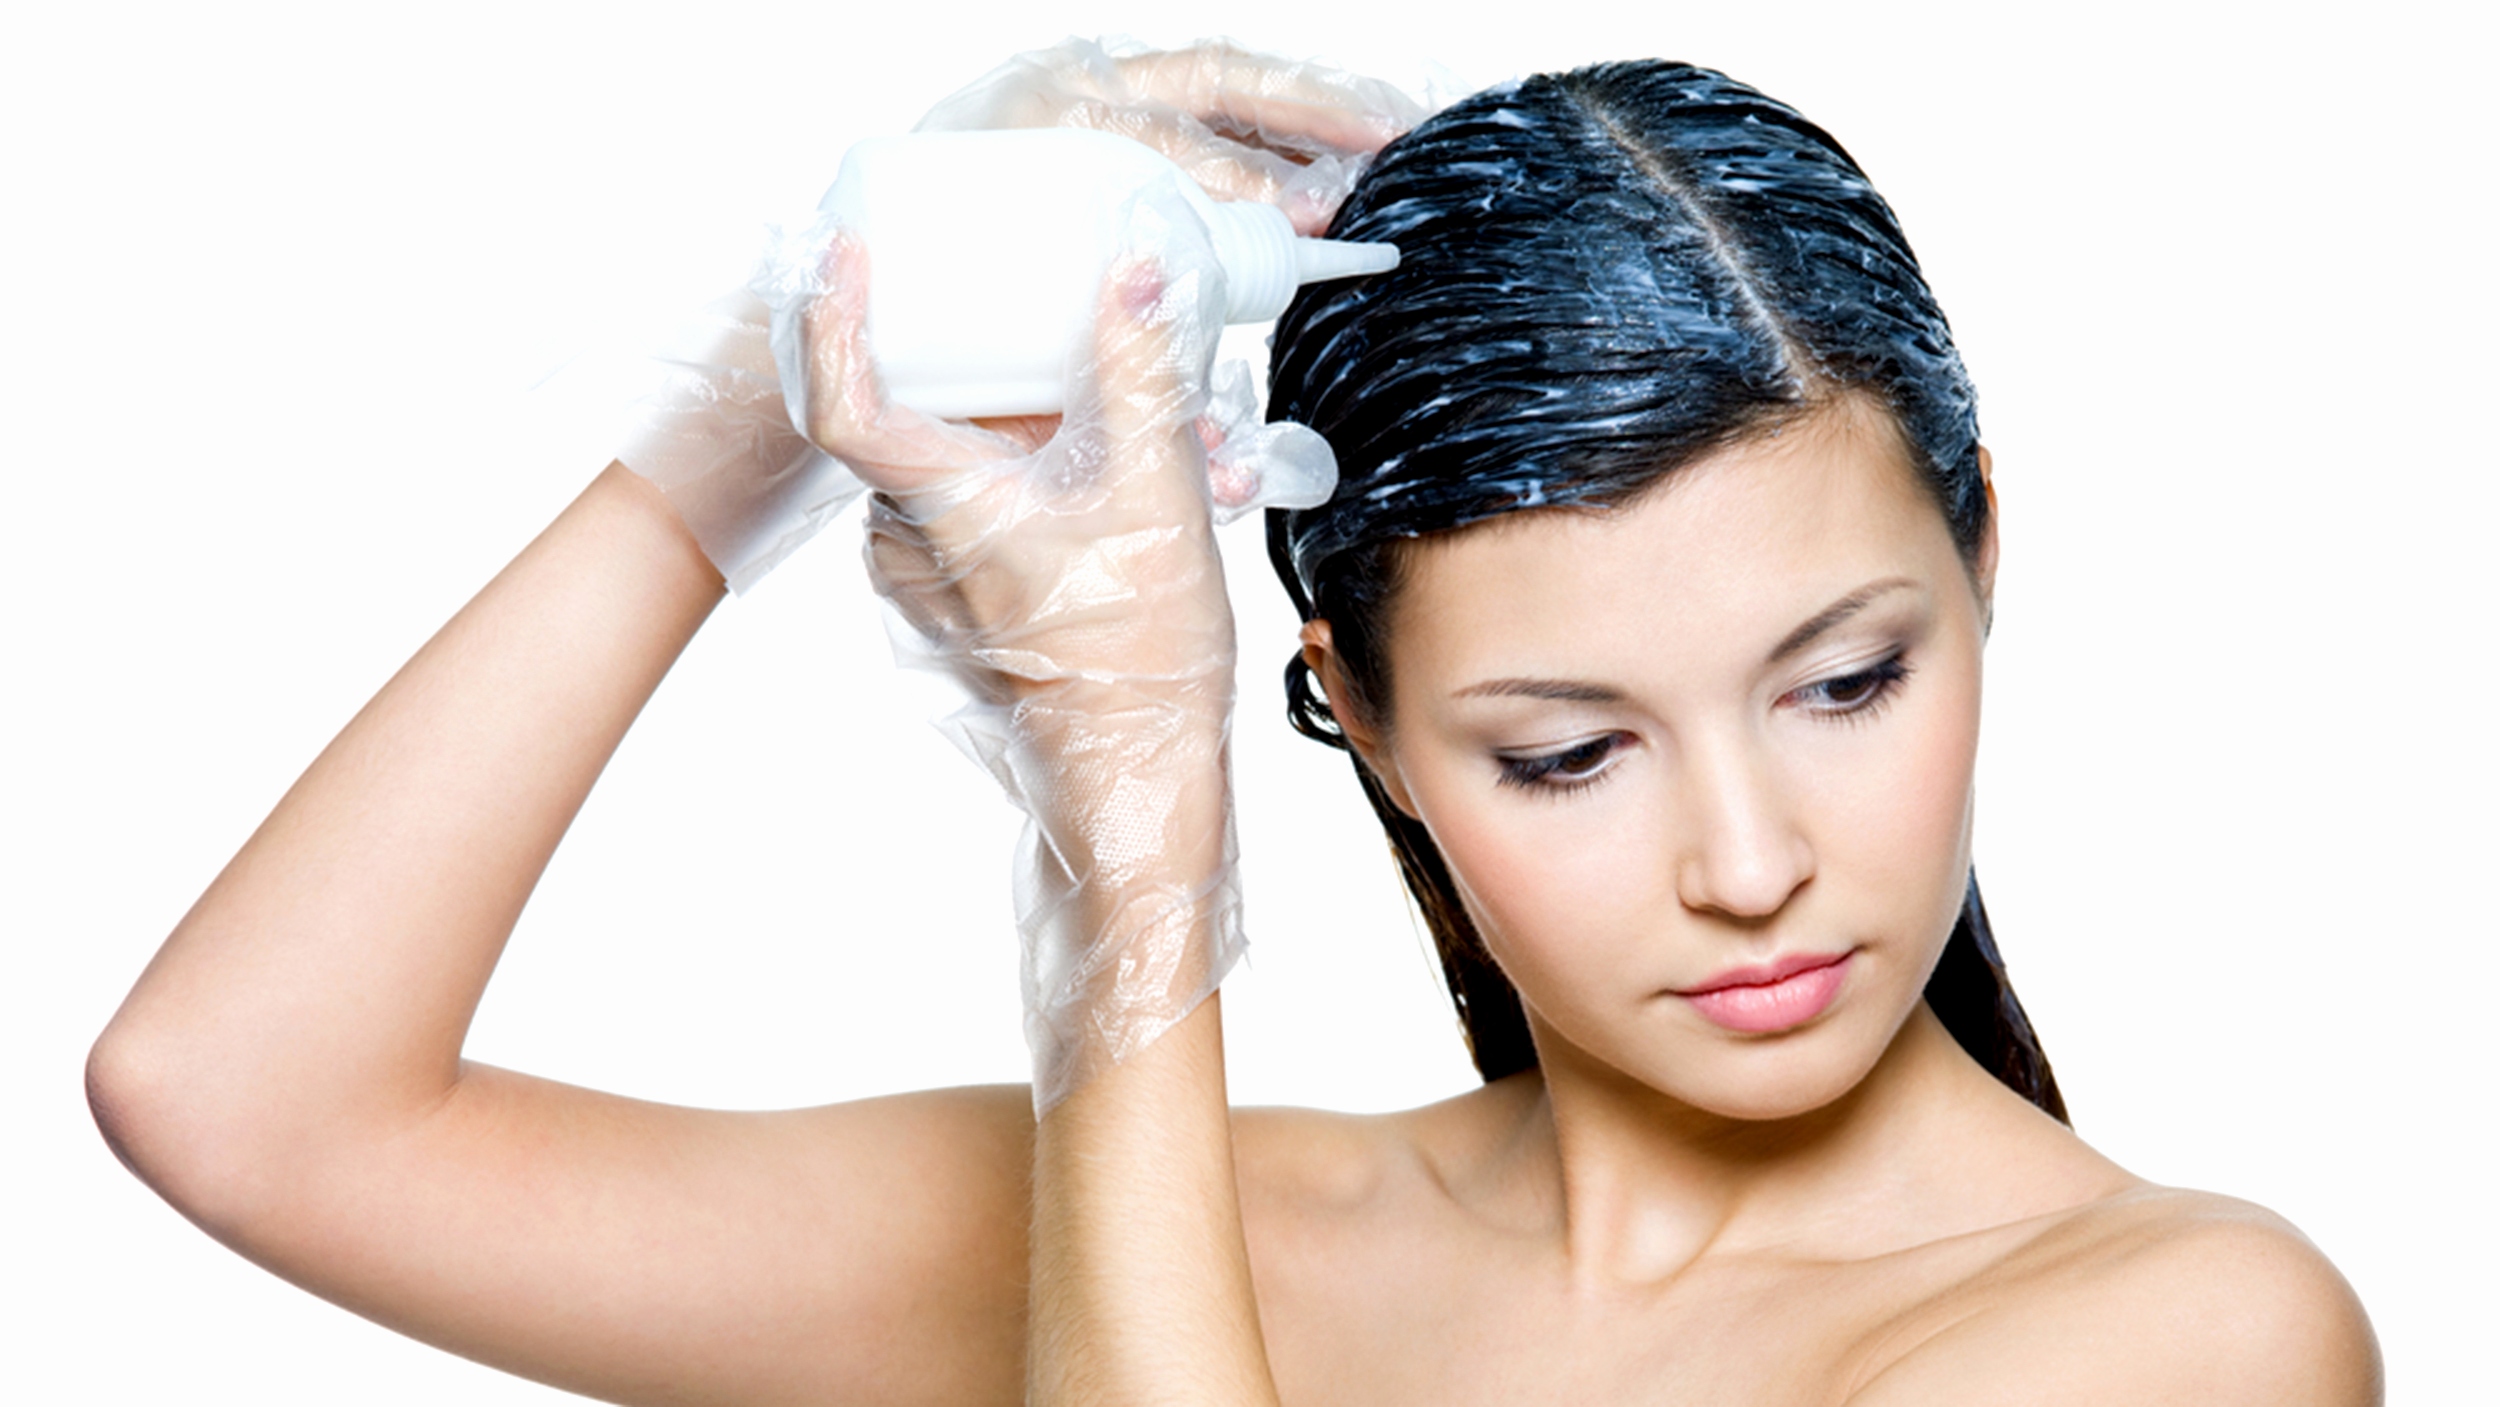   Nhuộm tóc có thể làm tăng nguy cơ ung thư vú  